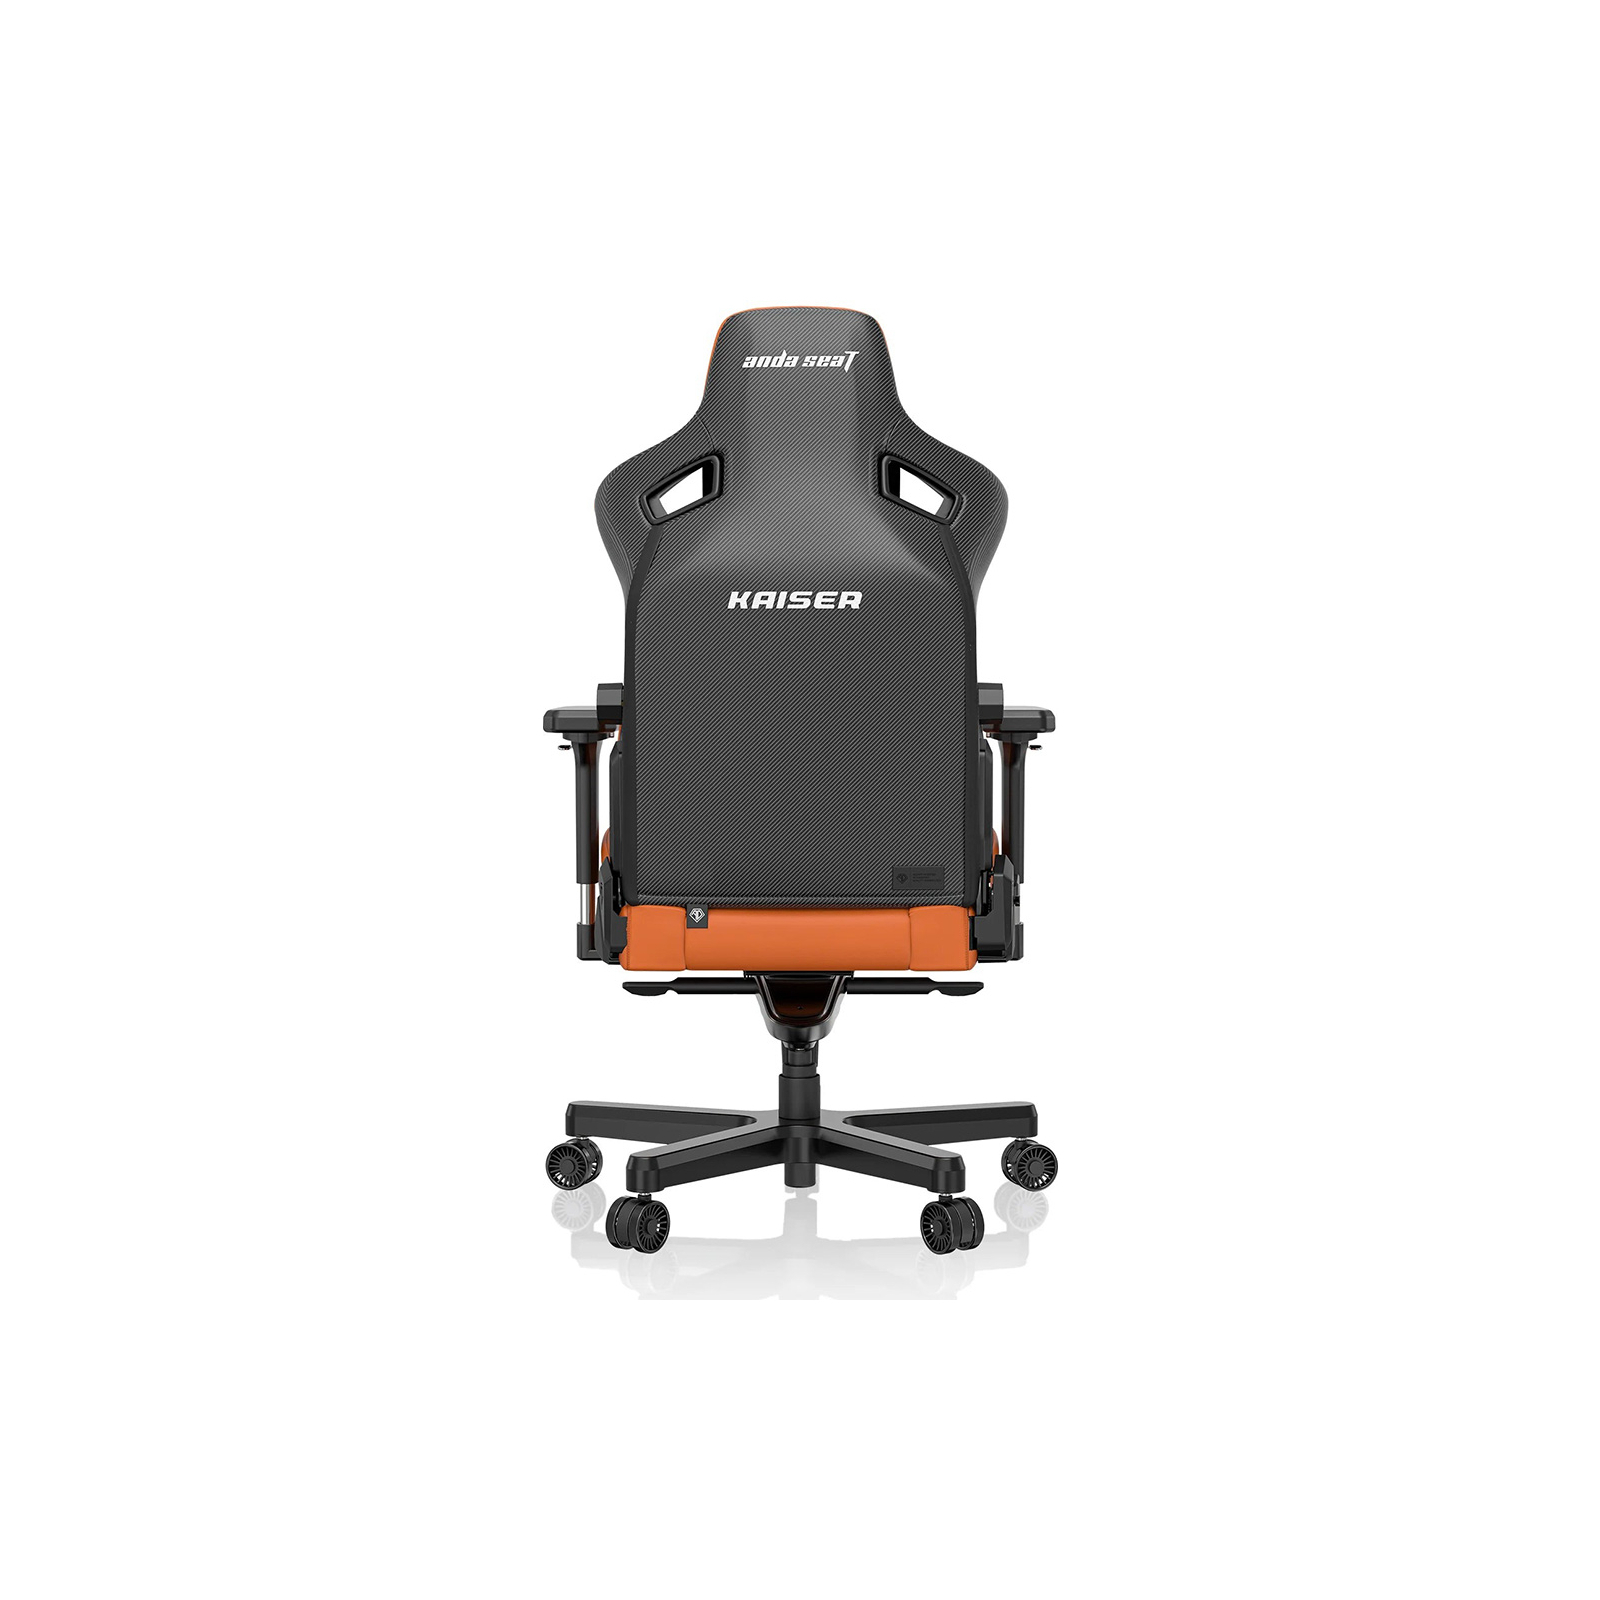 Кресло игровое Anda Seat Kaiser 3 Black Size XL (AD12YDC-XL-01-B-PV/C) изображение 3